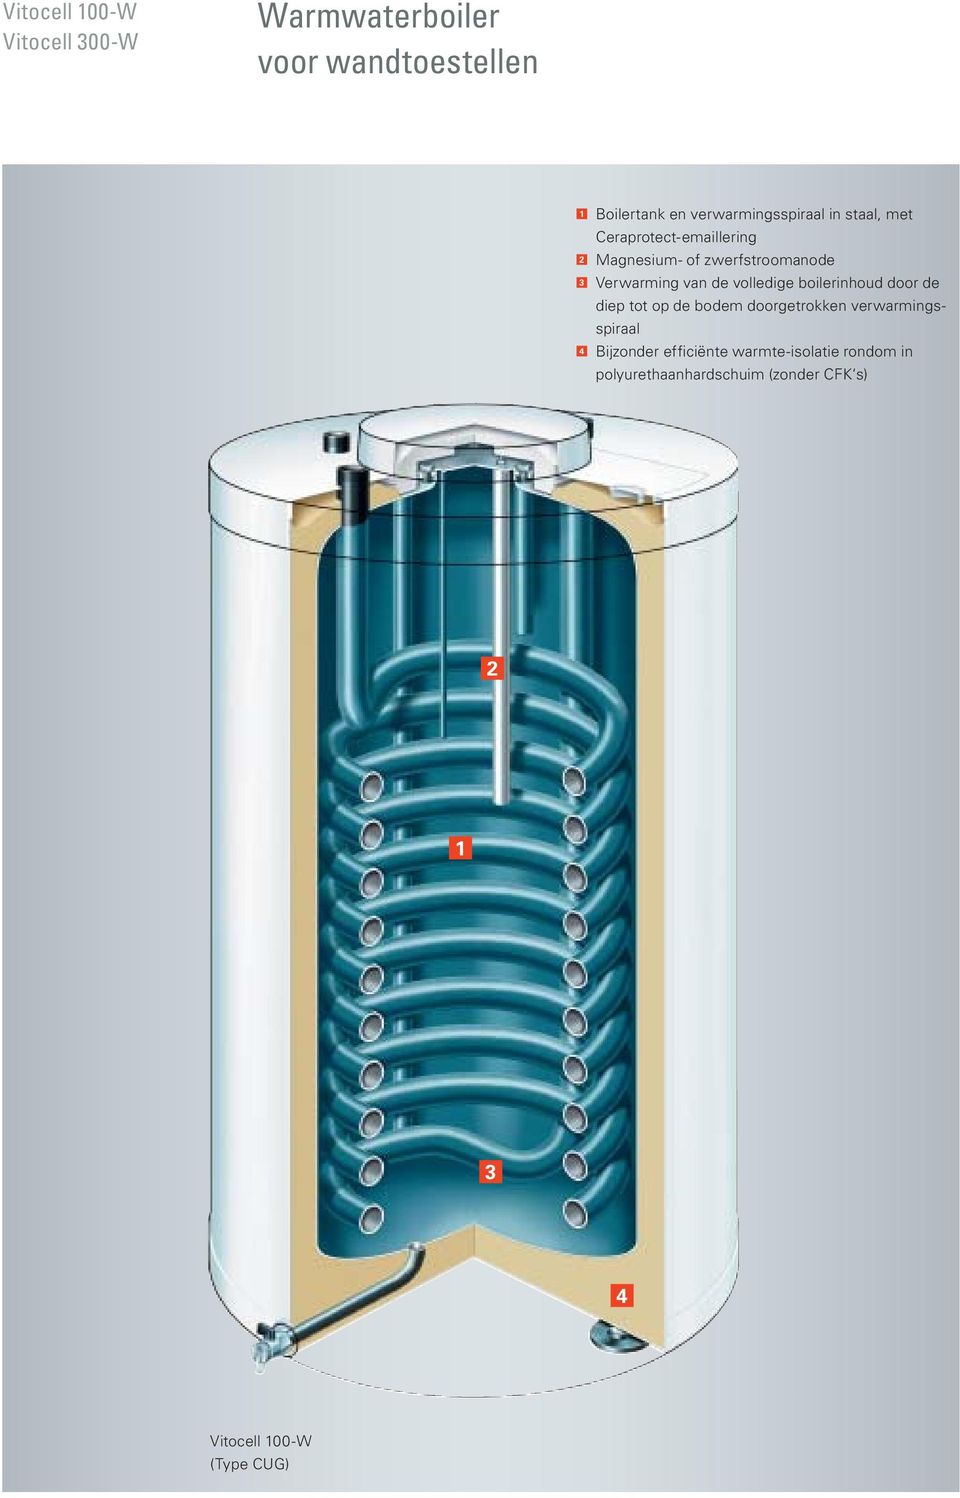 Verwarming van de volledige boilerinhoud door de diep tot op de bodem doorgetrokken